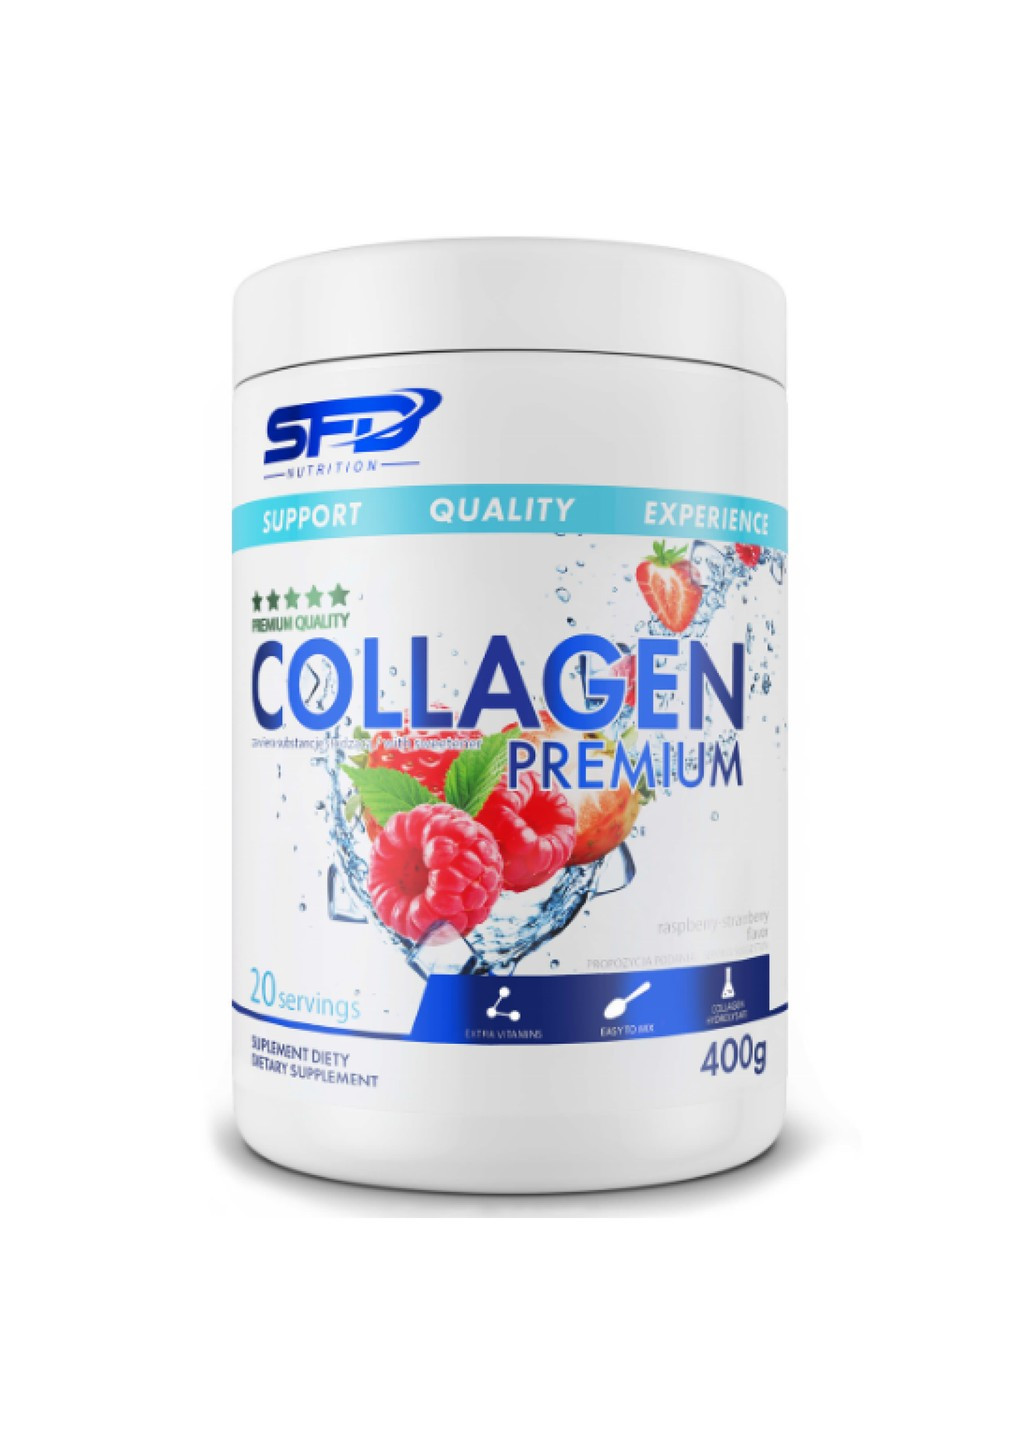 Collagen premium - 400g Blackurrant SFD Nutrition (269713053)